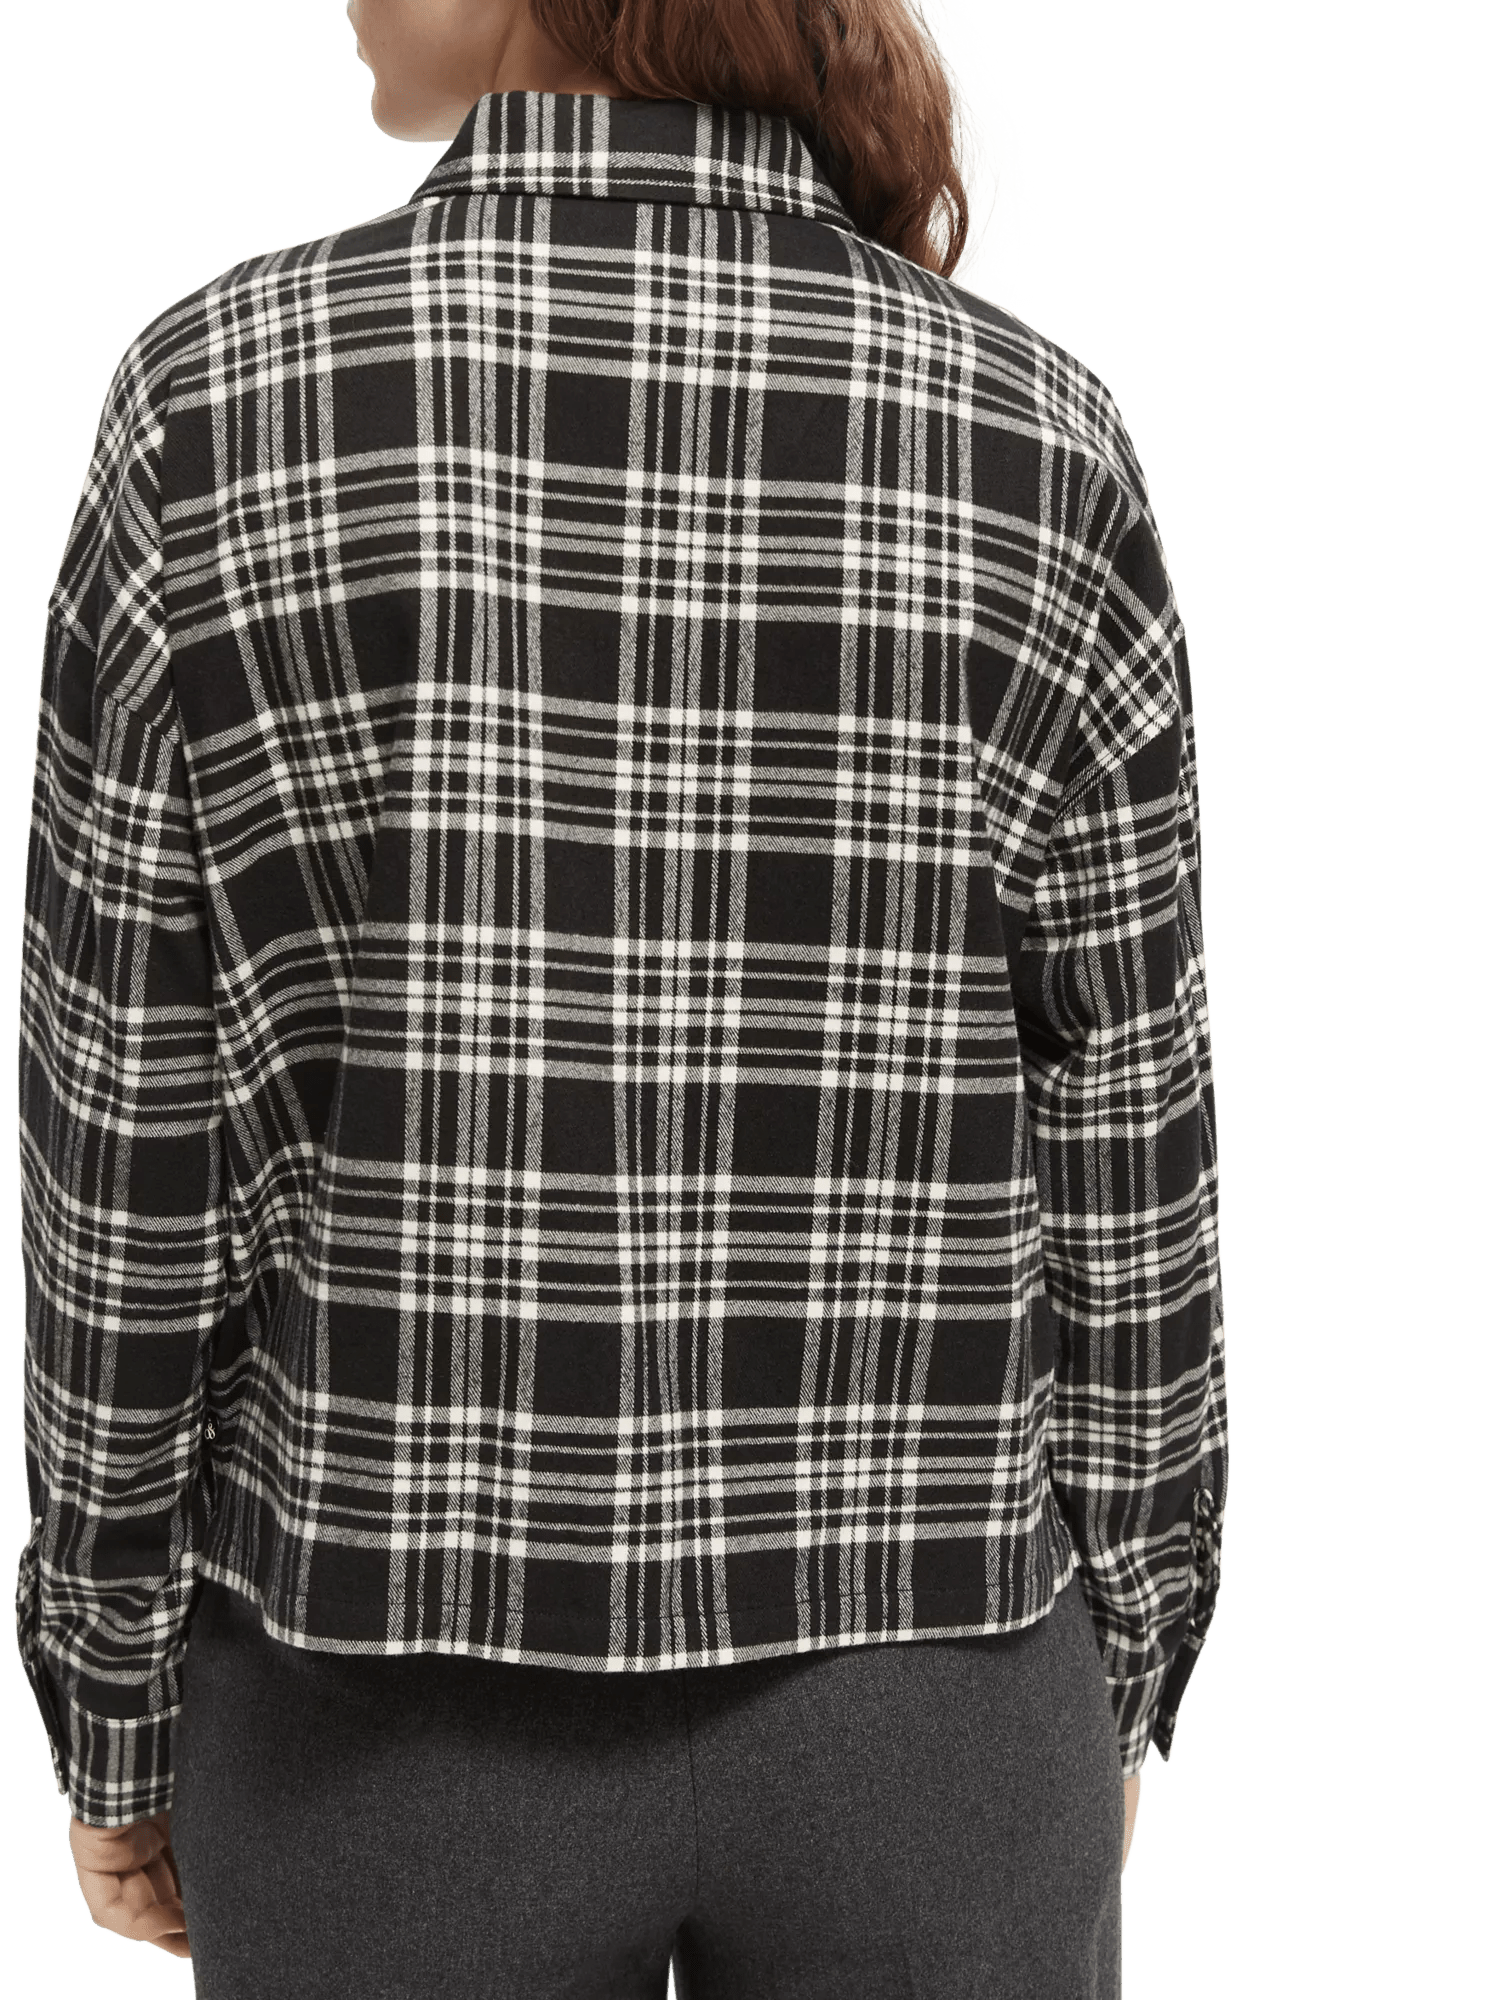 Scotch & Soda Boxy geruite blouse van flanel NHD-BCK